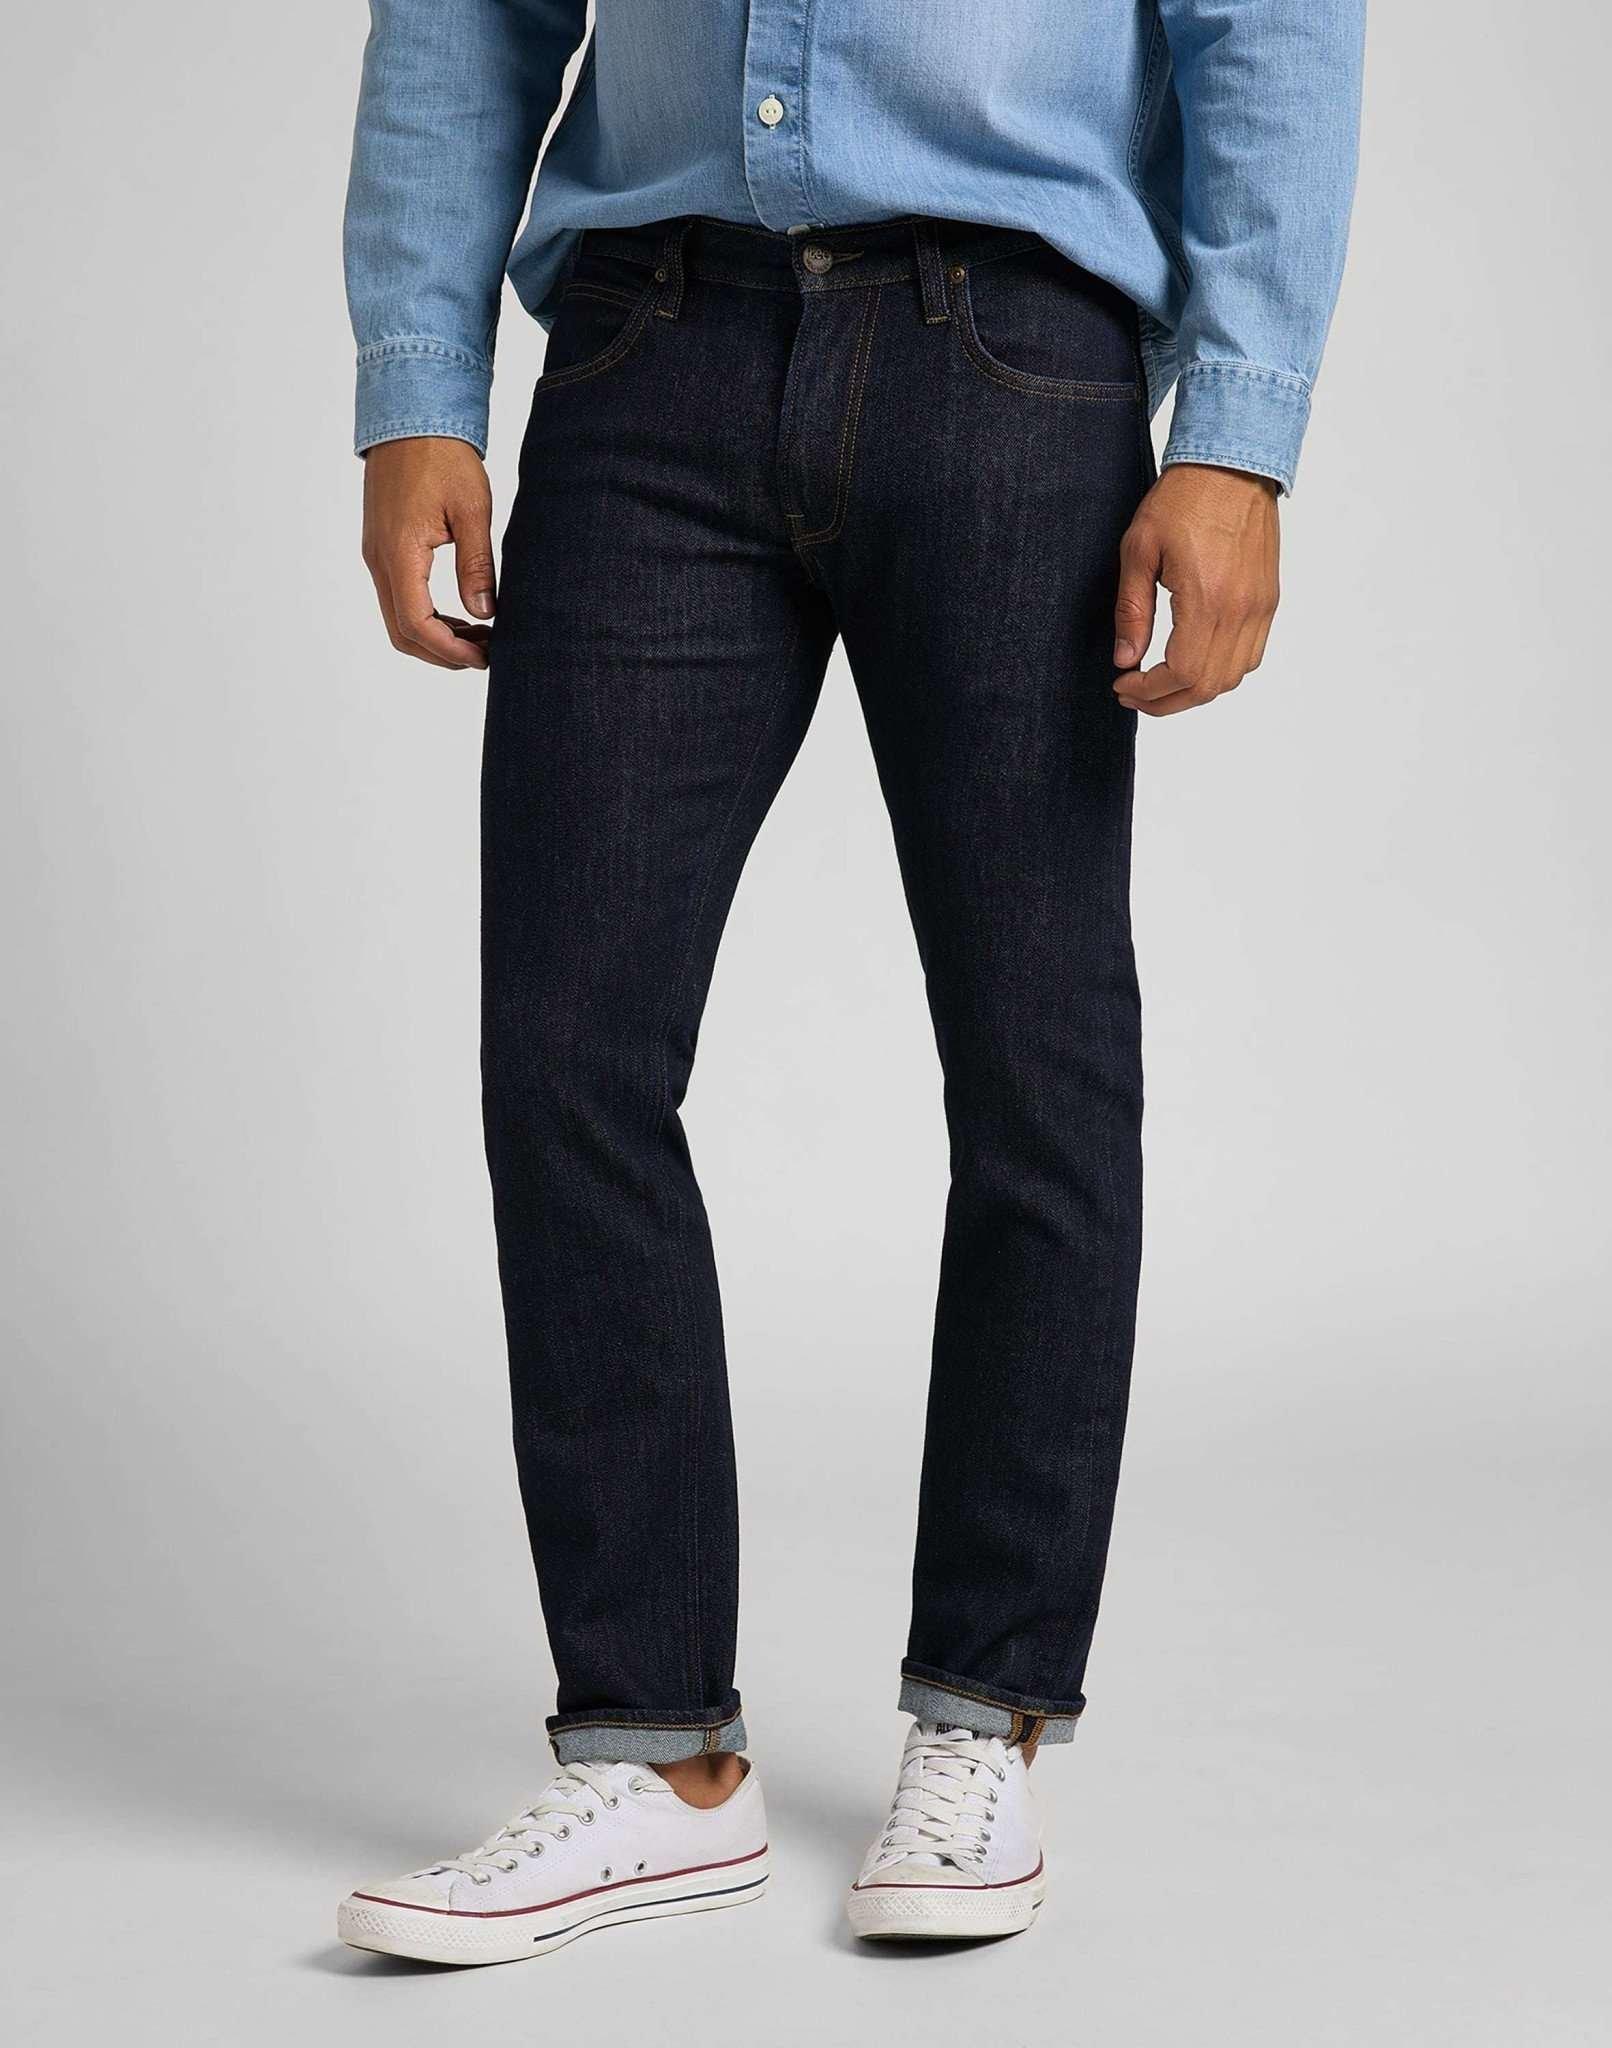 Jeans Straight Leg Daren Herren Blau Denim L32/W40 von Lee